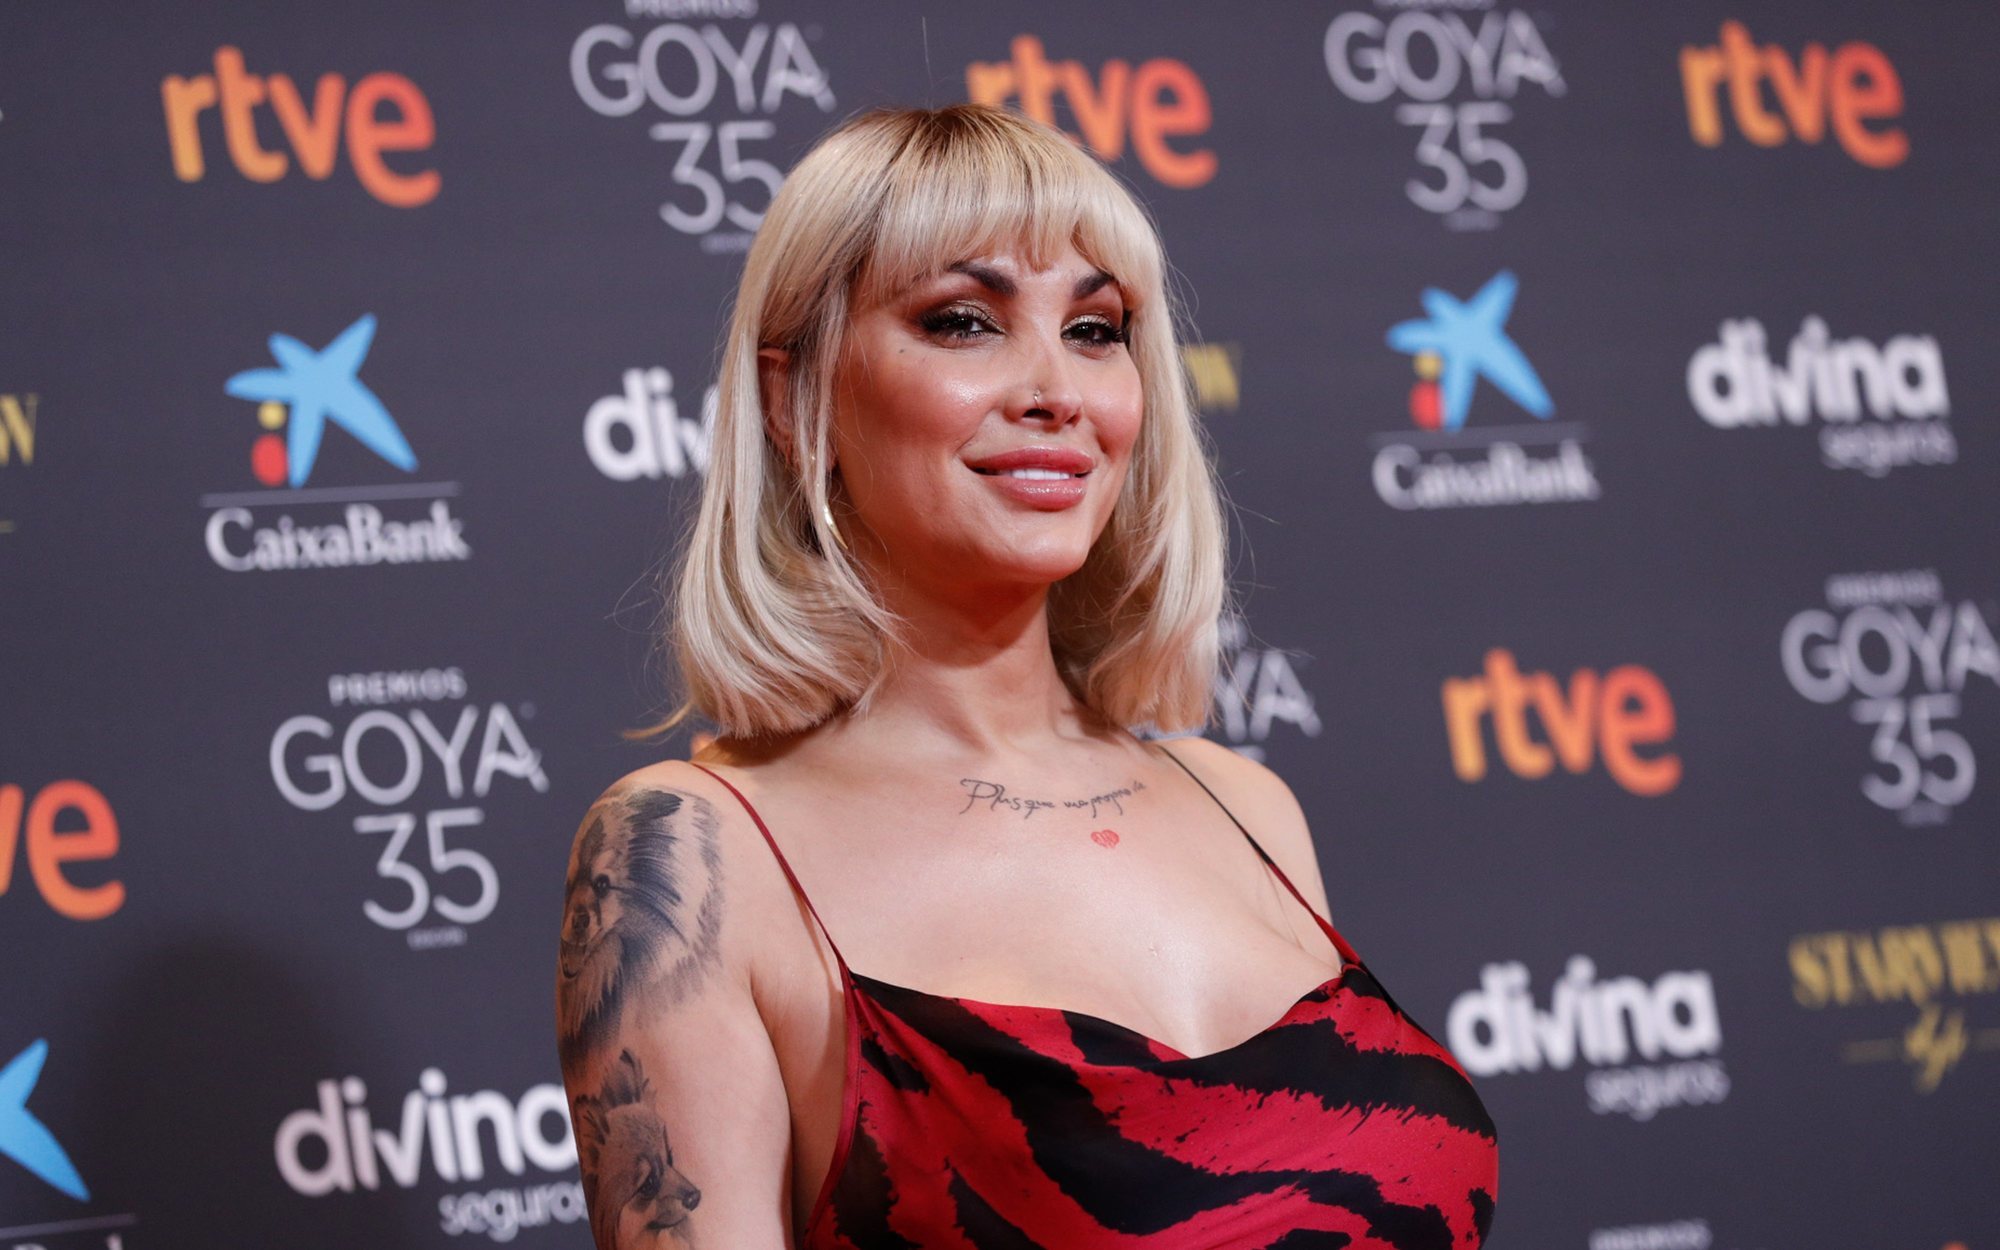 La respuesta de Daniela Santiago a los hombres que la llamaron "puta" en los premios Goya 2021